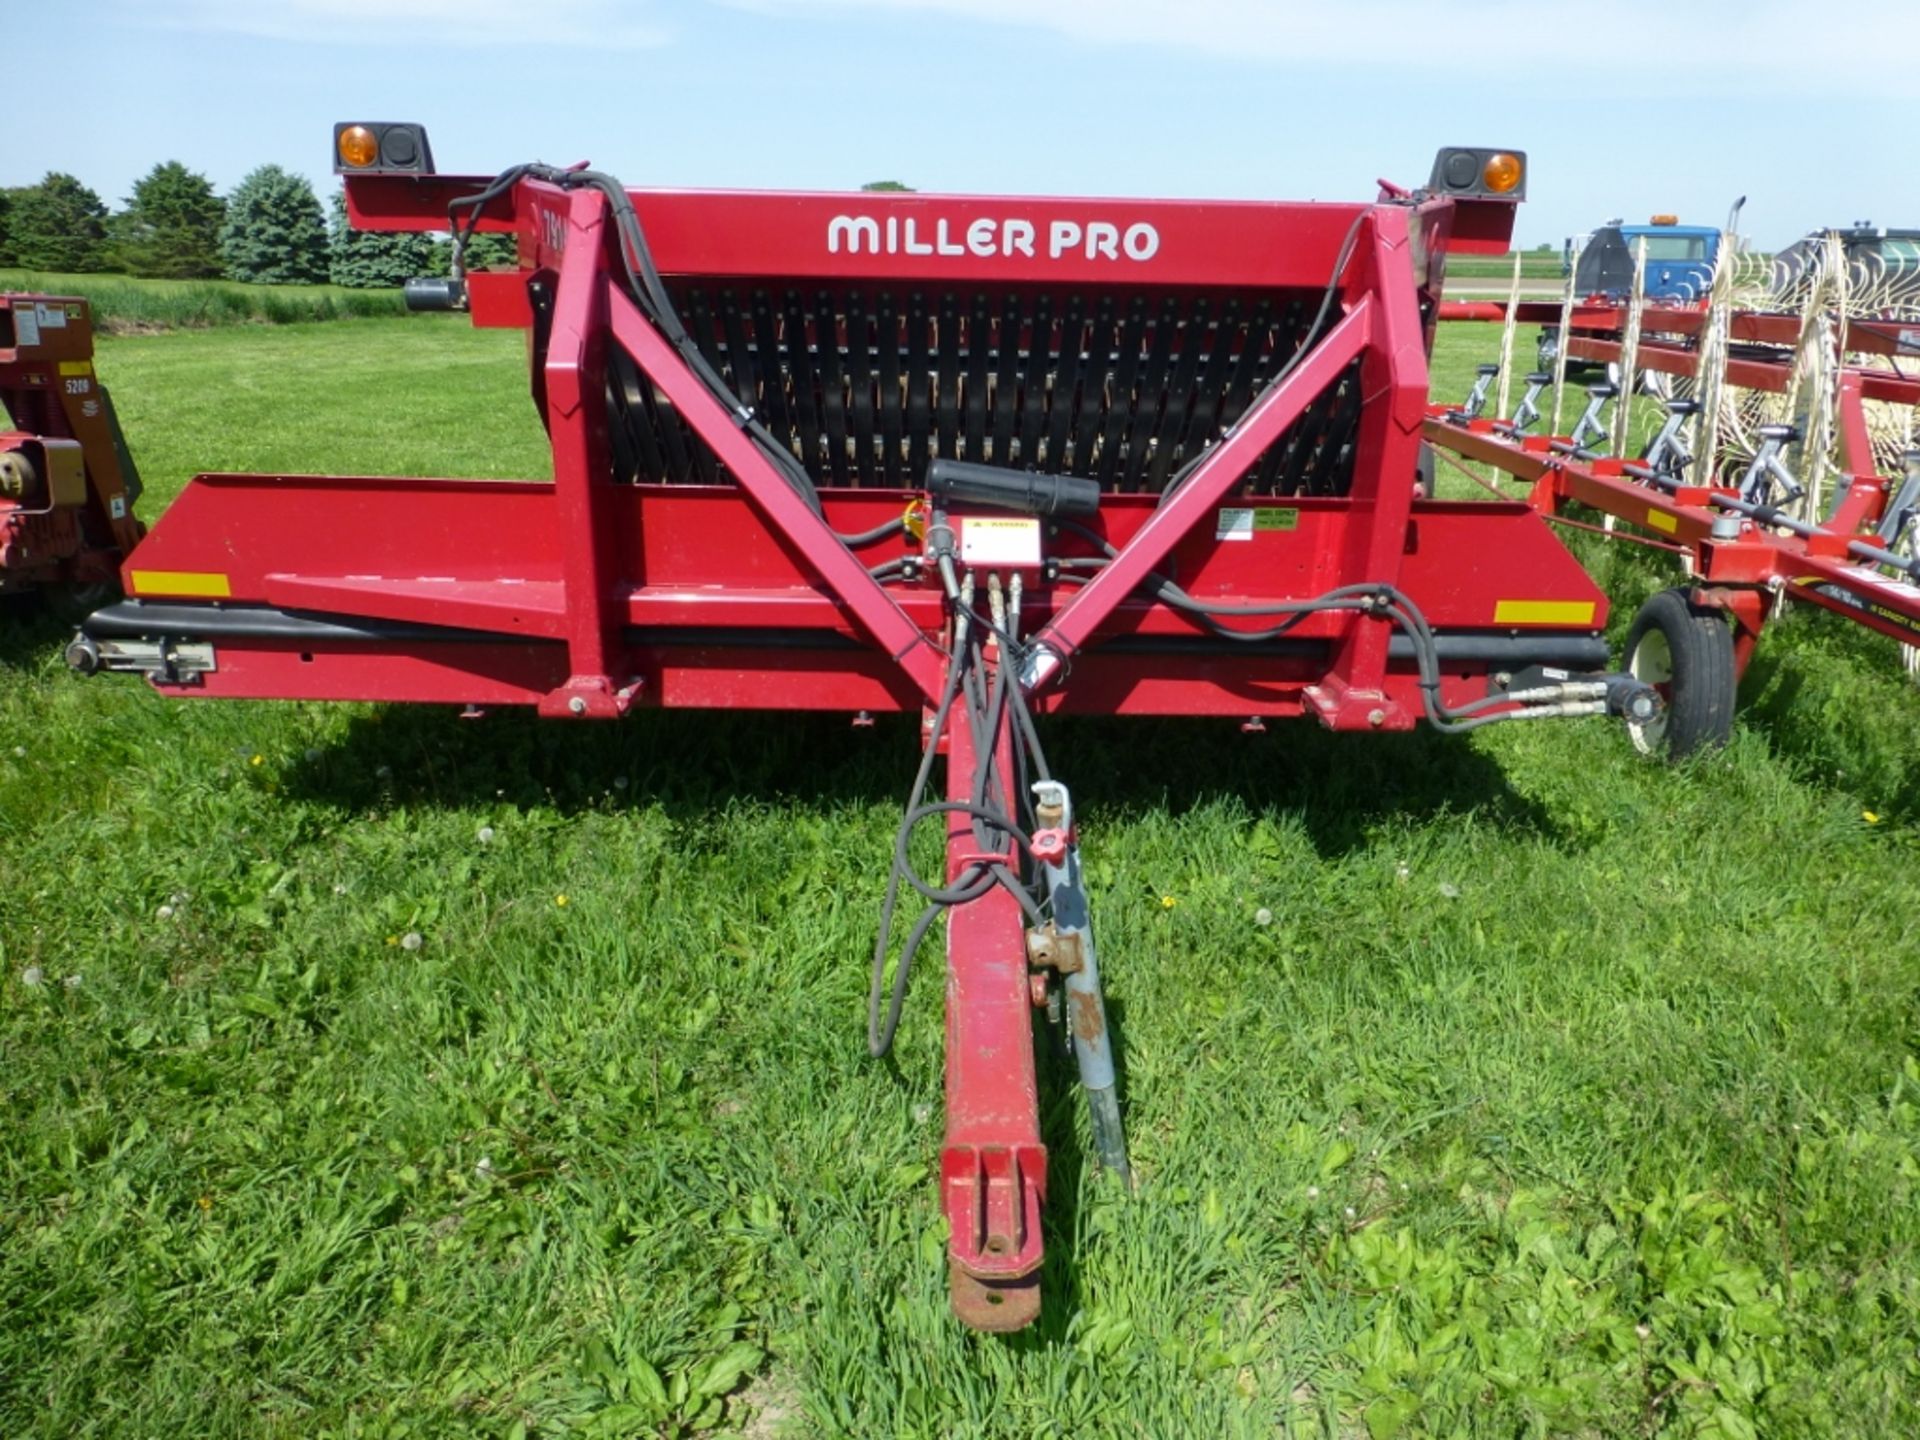 MillerPro model 7914 hay inverter. SE:4000272 - Image 2 of 13